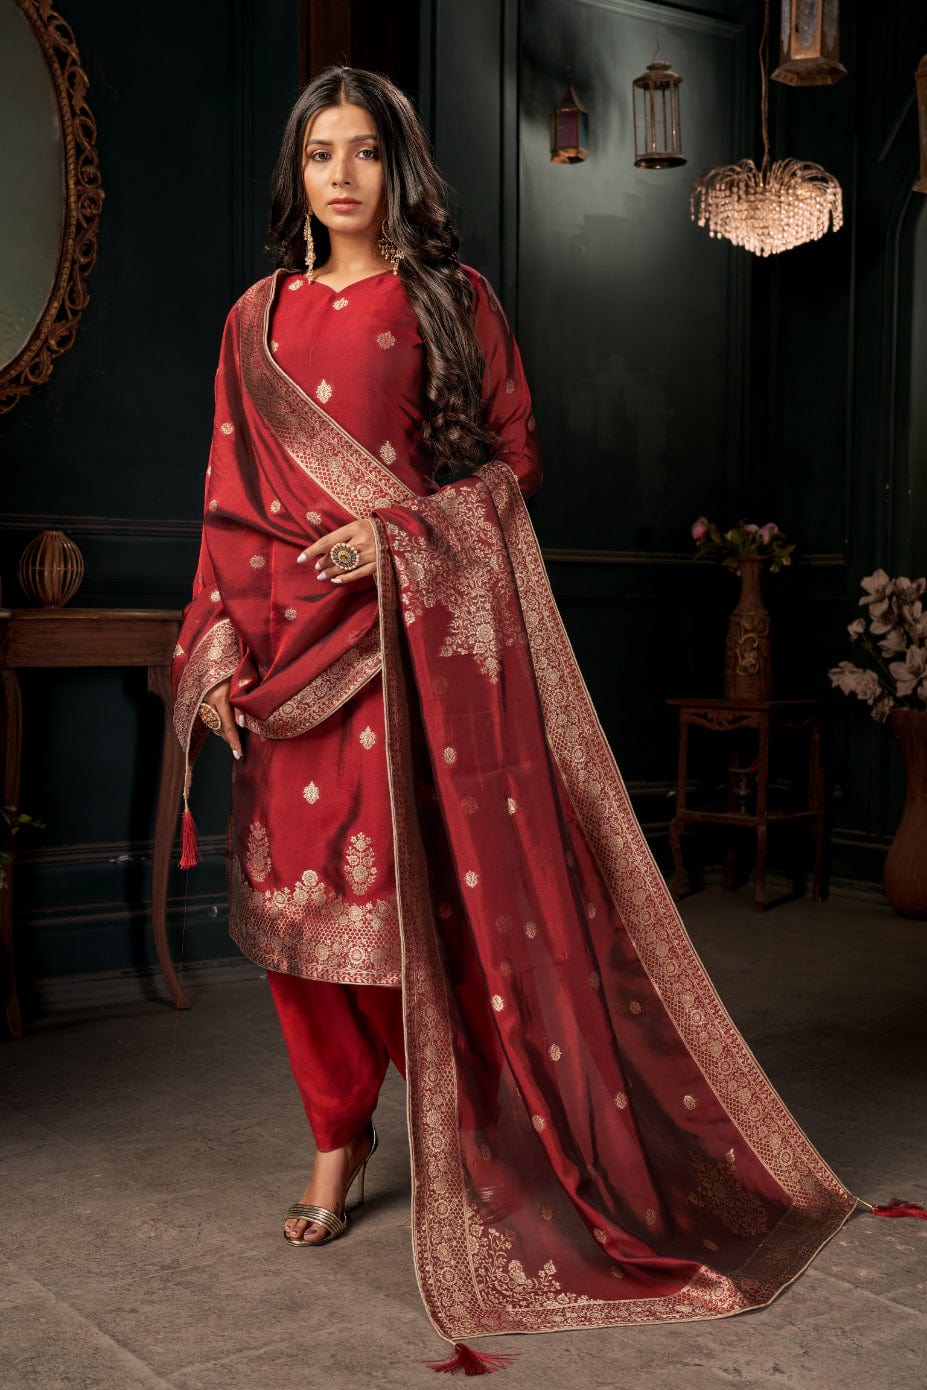 Cotton Salwar Kameez - Buy Cotton Suit Designs Online for Women